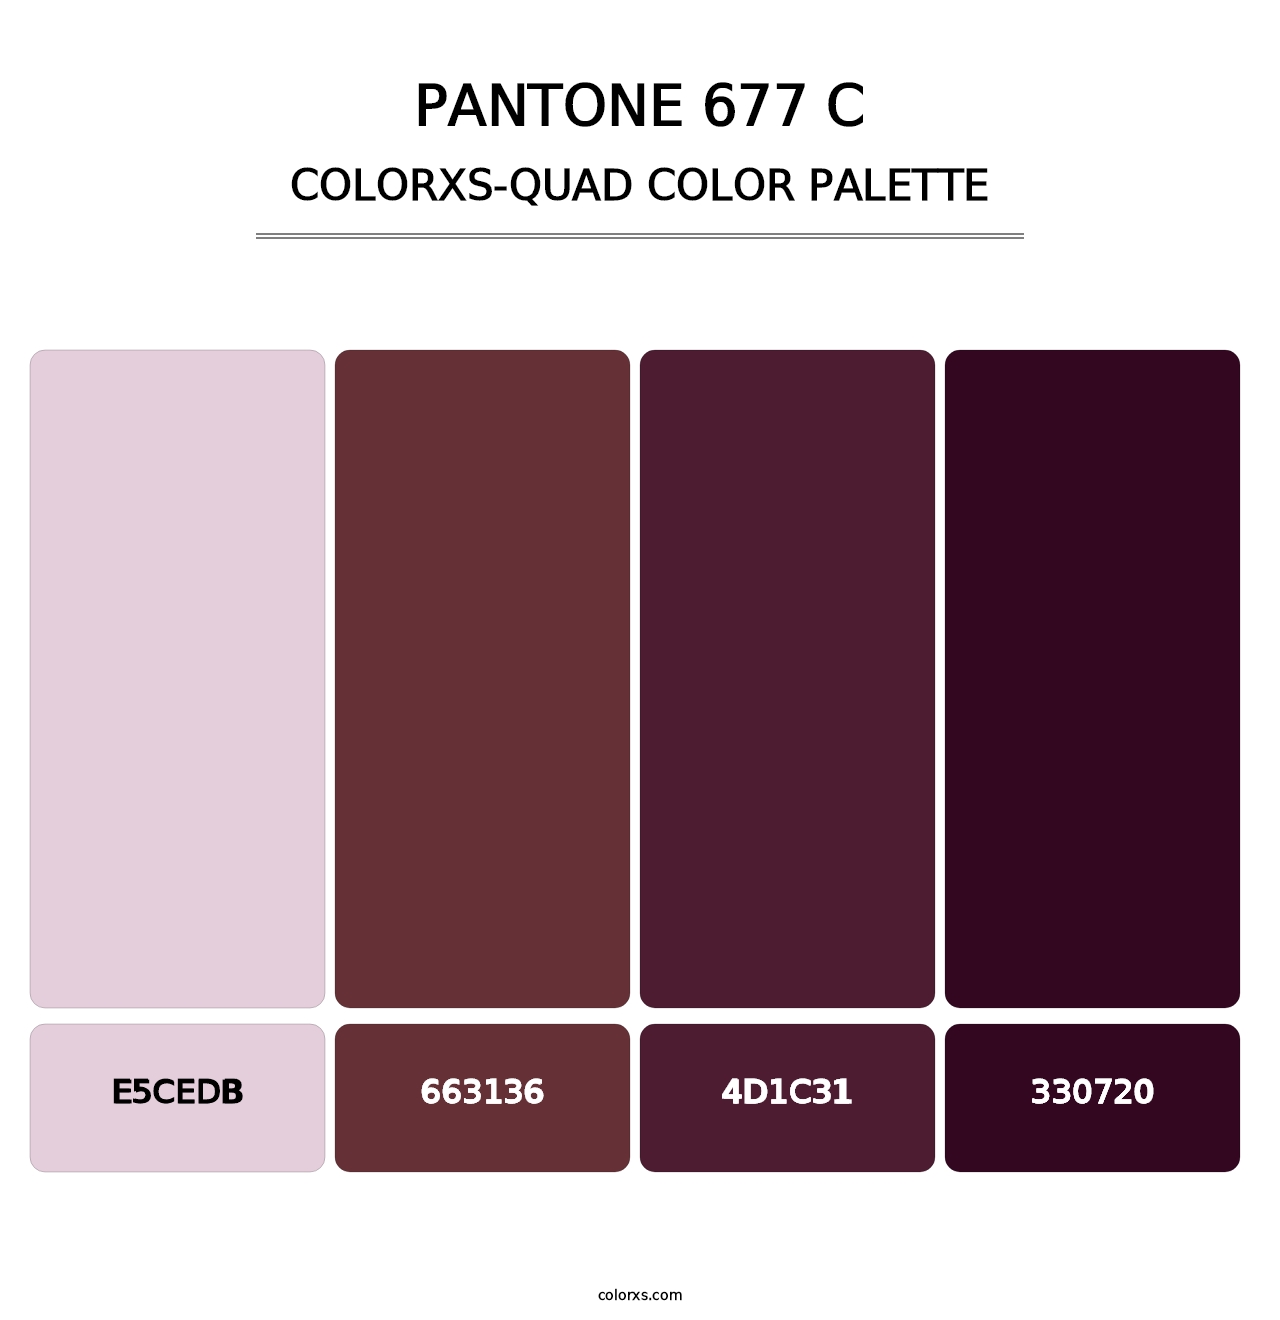 PANTONE 677 C - Colorxs Quad Palette